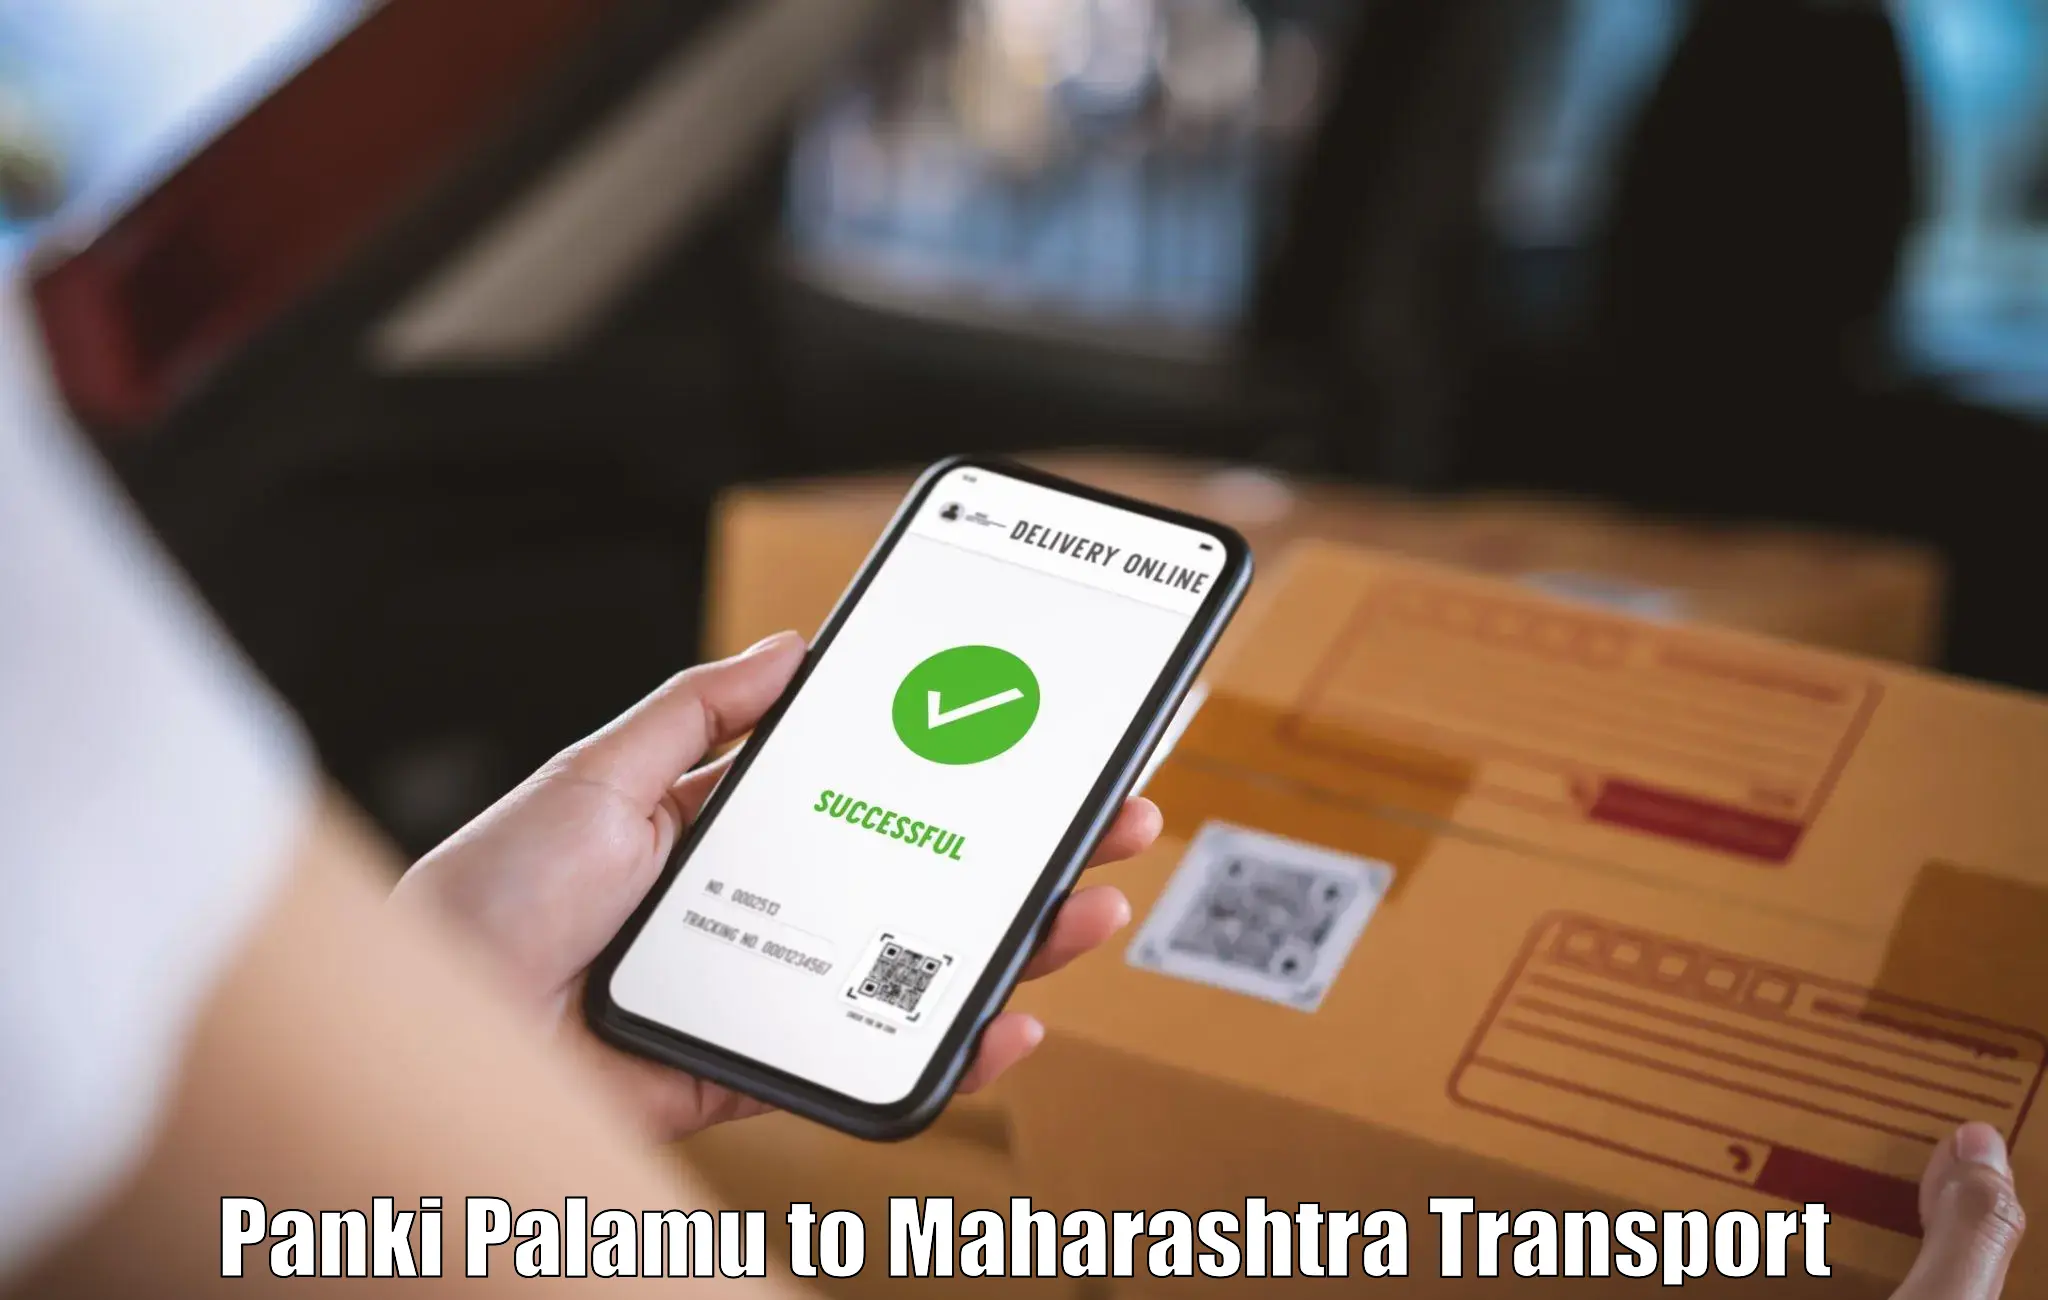 Road transport online services Panki Palamu to IIT Mumbai